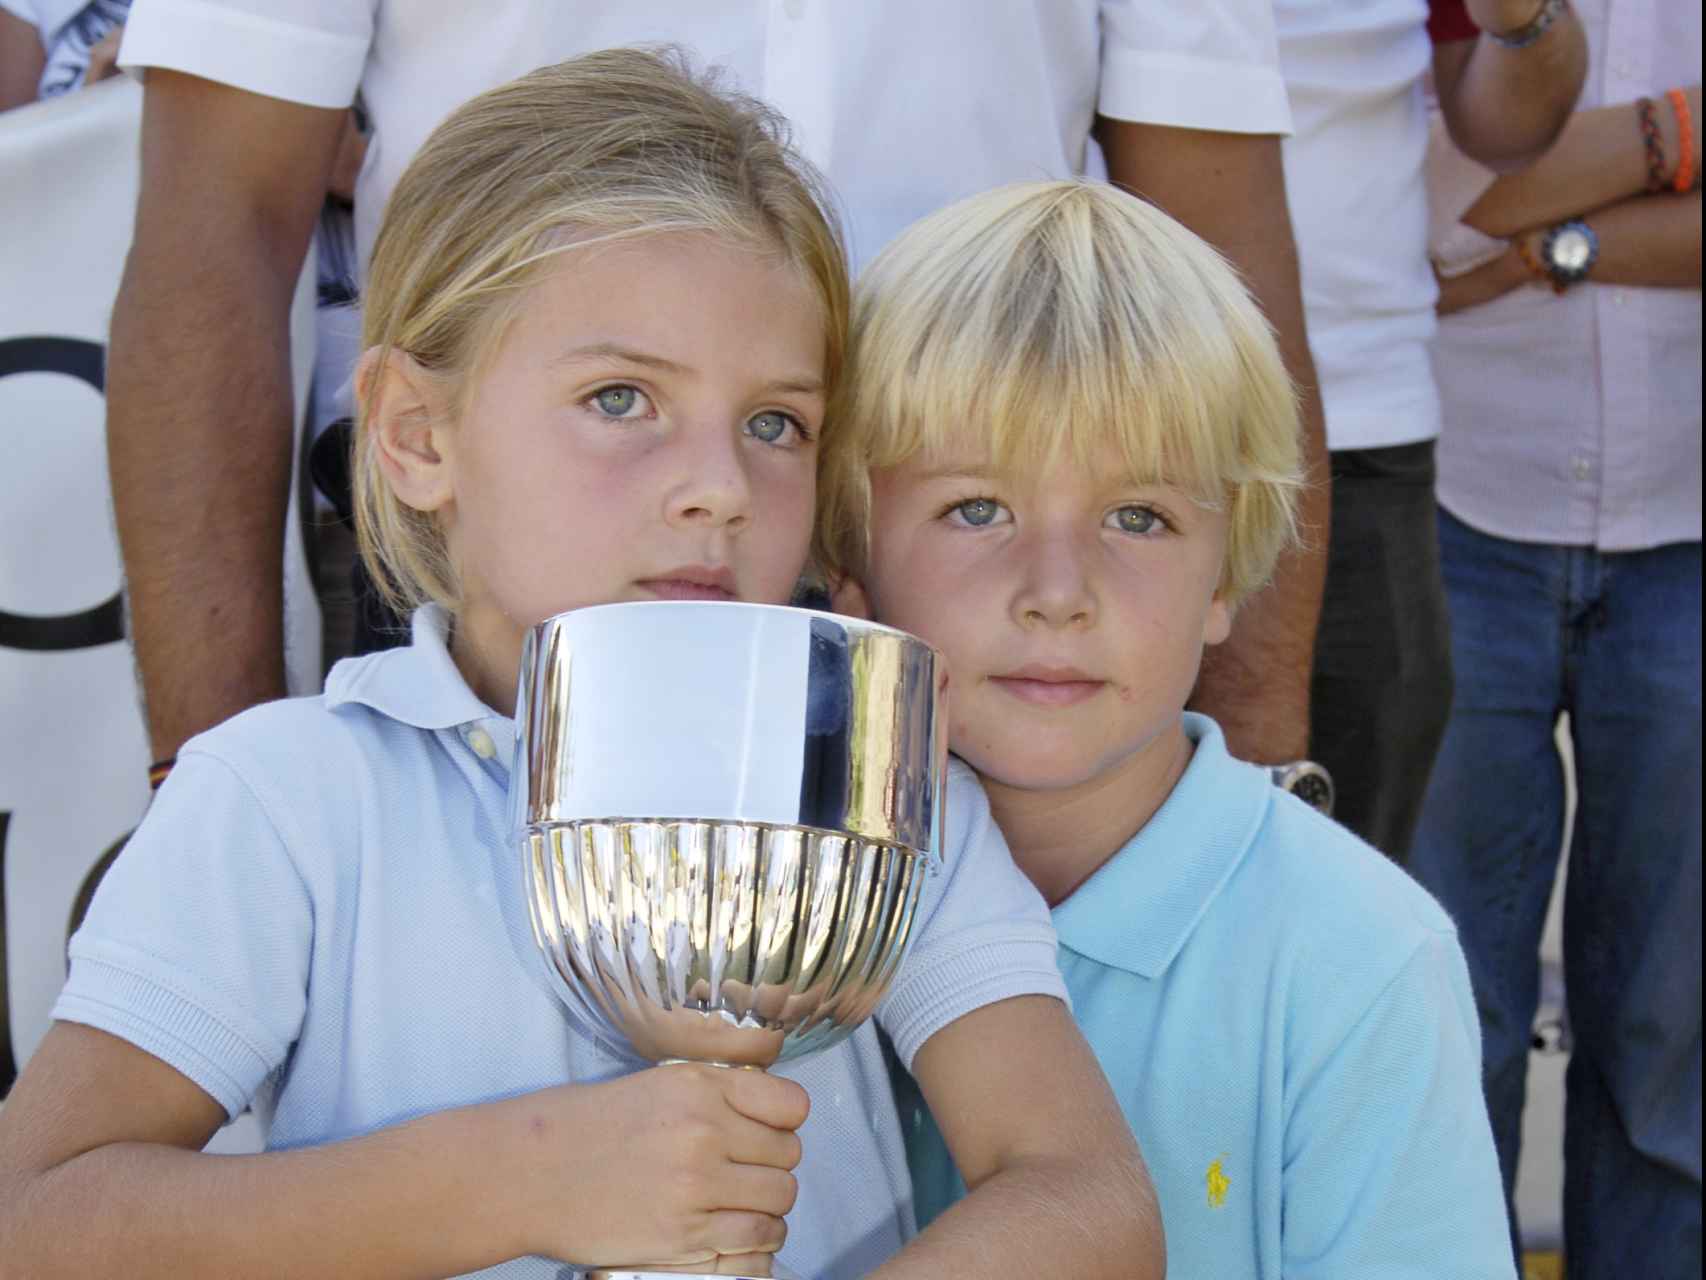 Amina y Luis Martínez de Irujo durante durante el campeonato de hípica de España en 2006, con cinco años.